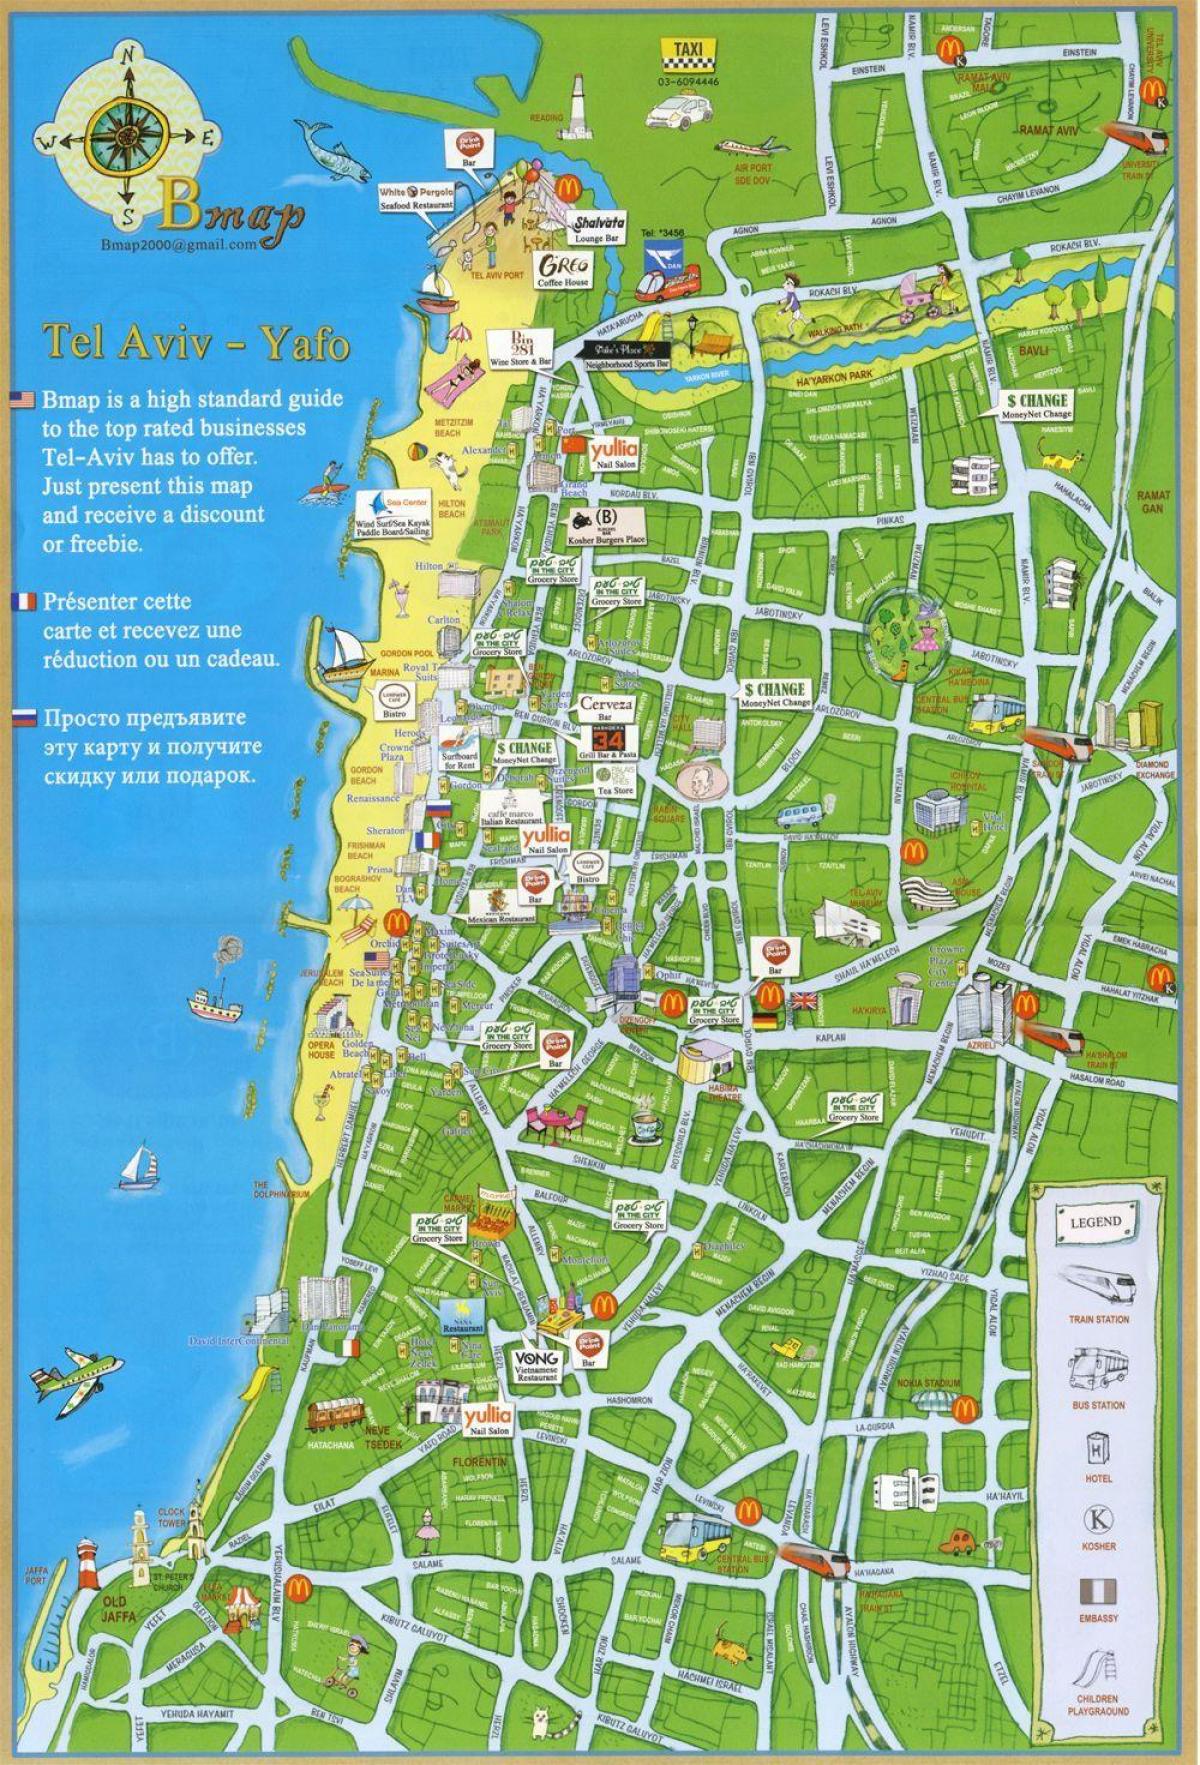 Tel Aviv attraksjoner kart